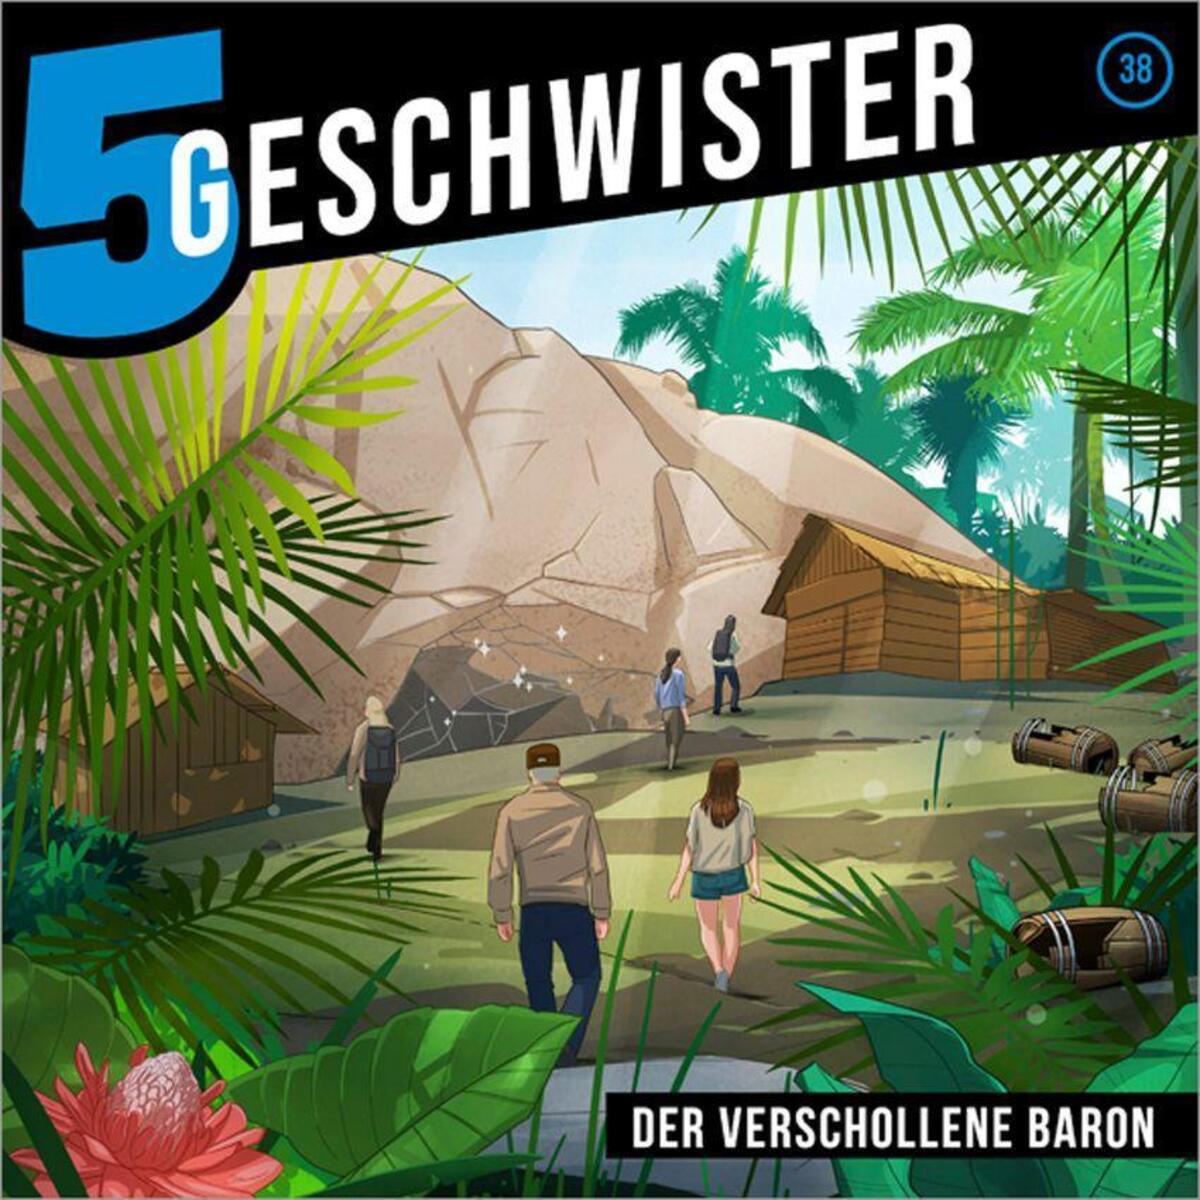 Der verschollene Baron - Folge 38 von Gerth Medien GmbH